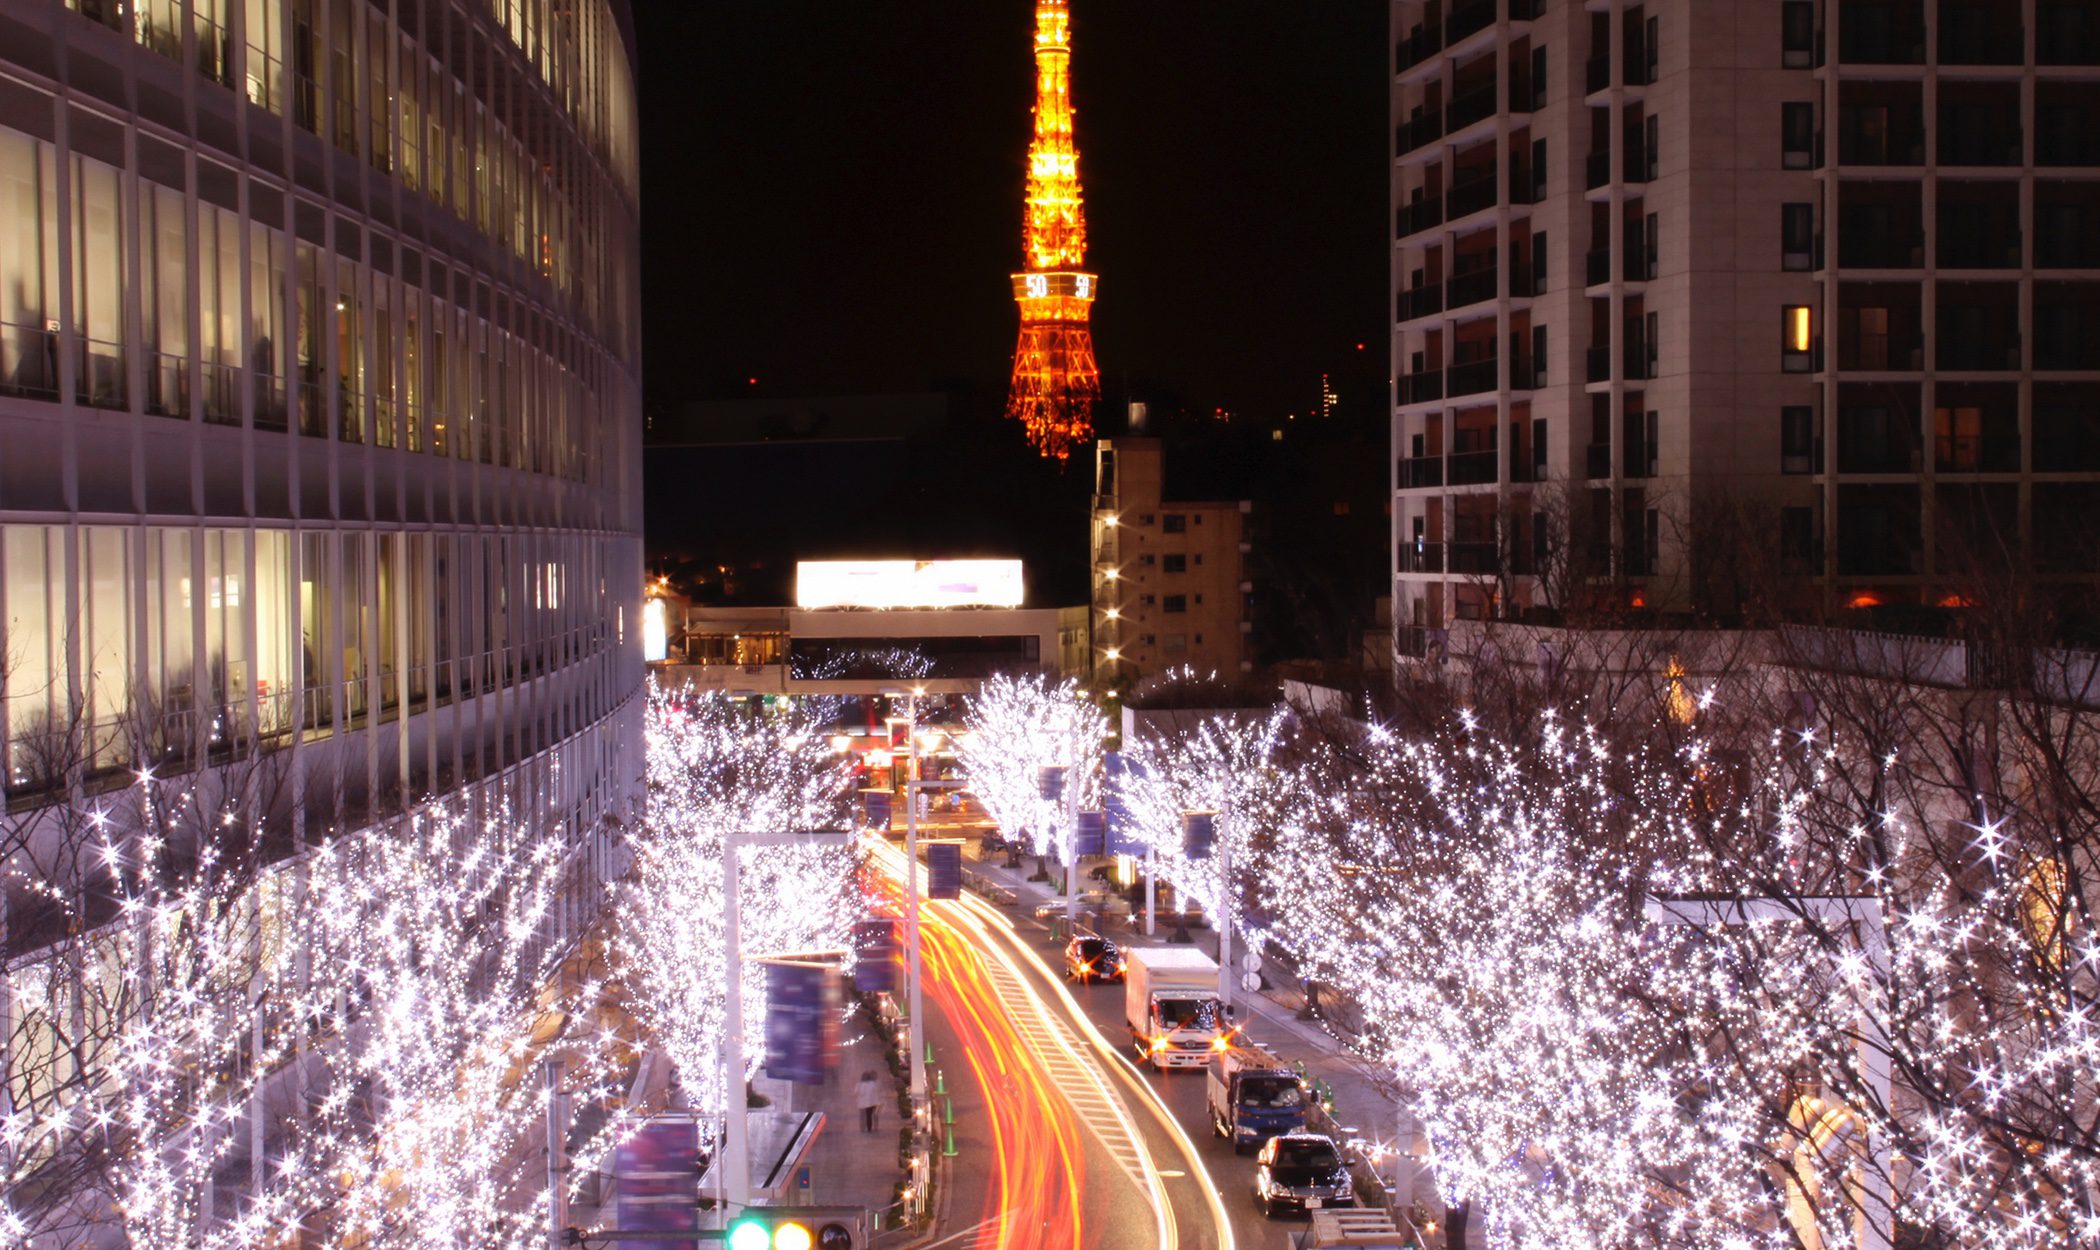 Navidad en Japón: fiestas familiares y comerciales sin trasfondo religioso